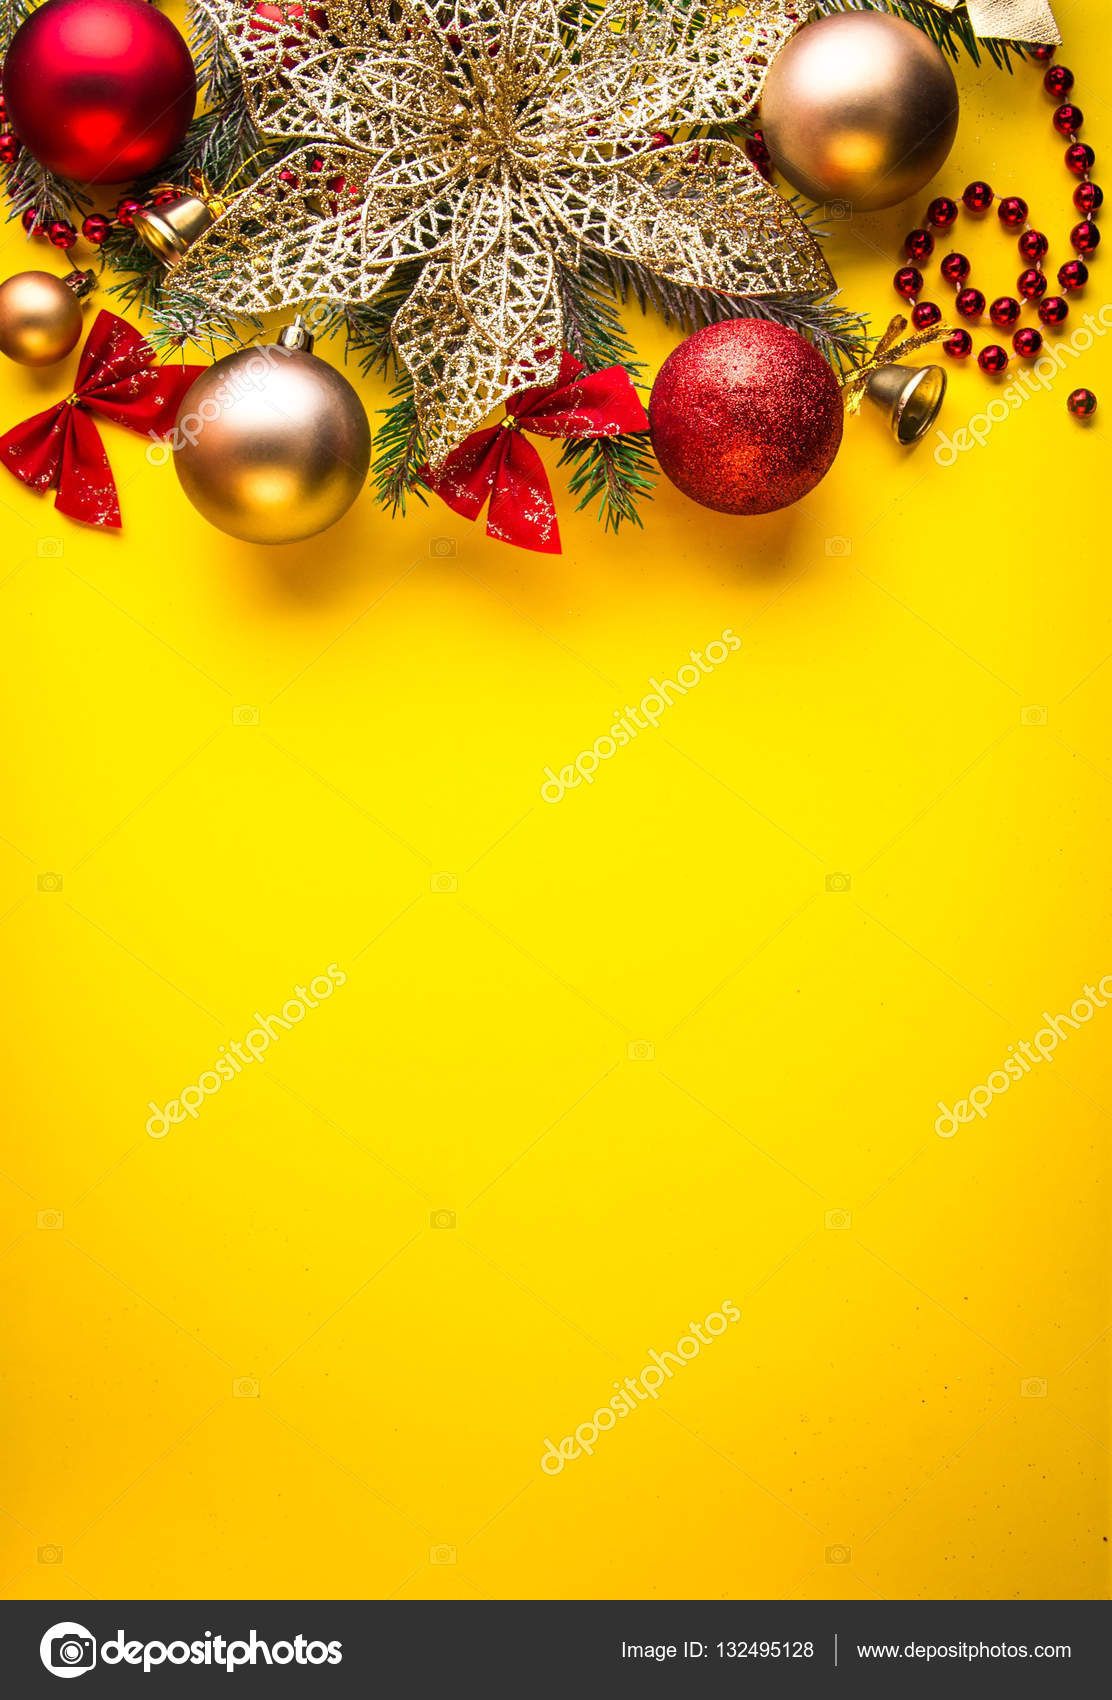 Hình ảnh nền Giáng sinh màu vàng đầy sức sống làm cho màn hình của bạn nổi bật. Có thể bạn đang tìm kiếm một sự lựa chọn đầy lạ lẫm để trang trí cho máy tính của mình, lấy cảm hứng từ các hình ảnh đầy màu sắc của mùa lễ hội này, hãy truy cập ngay để thưởng thức!